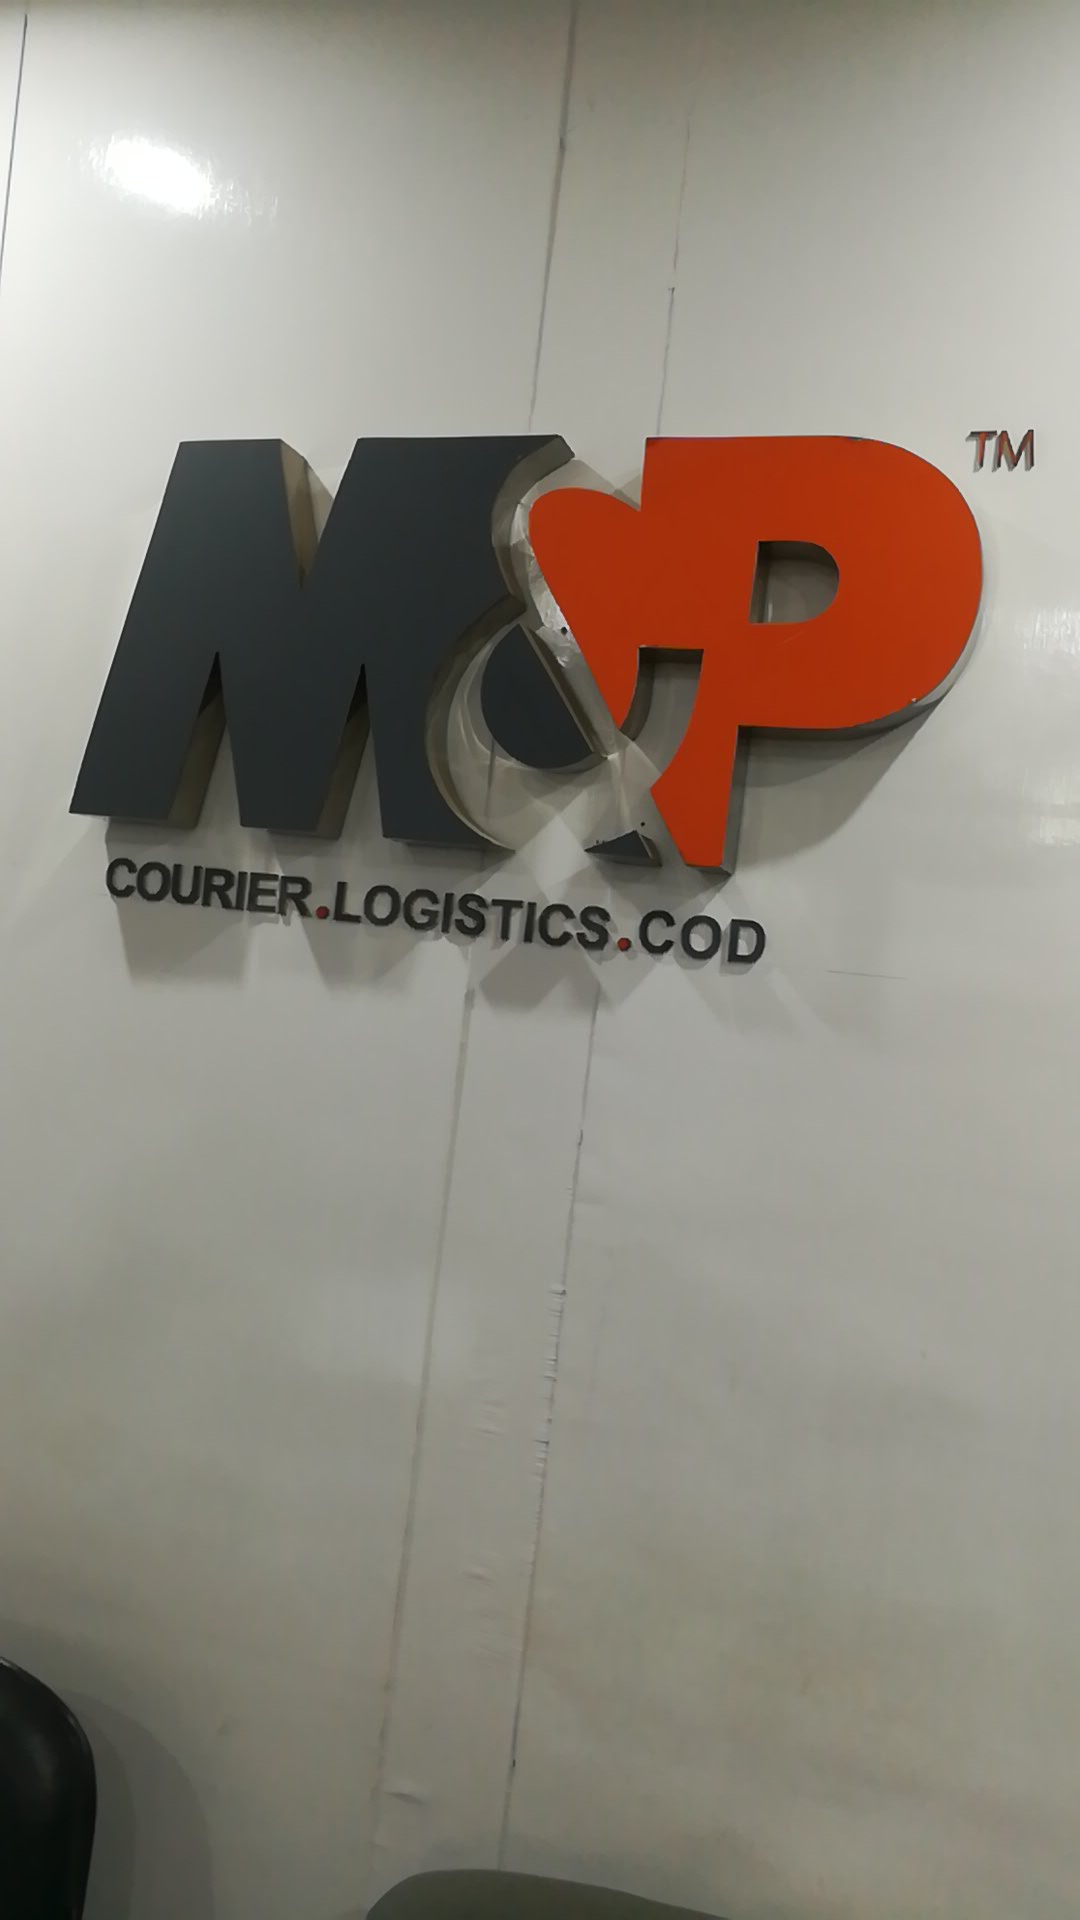 M&P courier